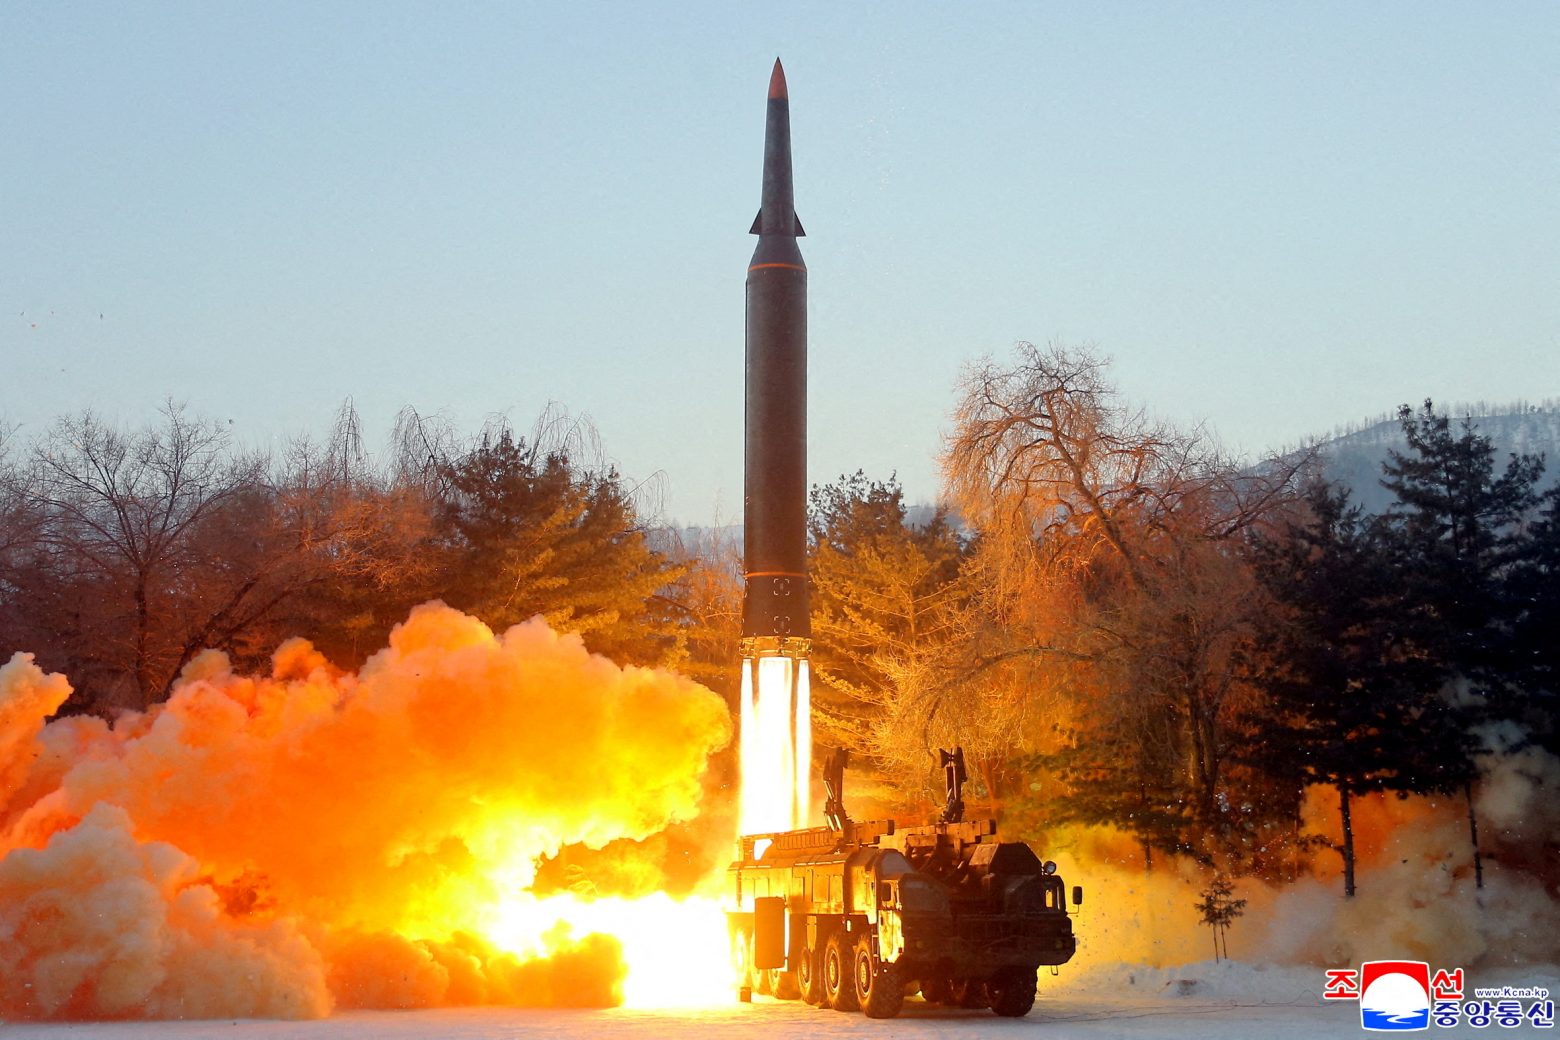 «Εισβολή» χαρακτηρίζει η Νότια Κορέα την πτώση βαλλιστικού πυραύλου της Βόρειας Κορέας κοντά στα χωρικά της ύδατα